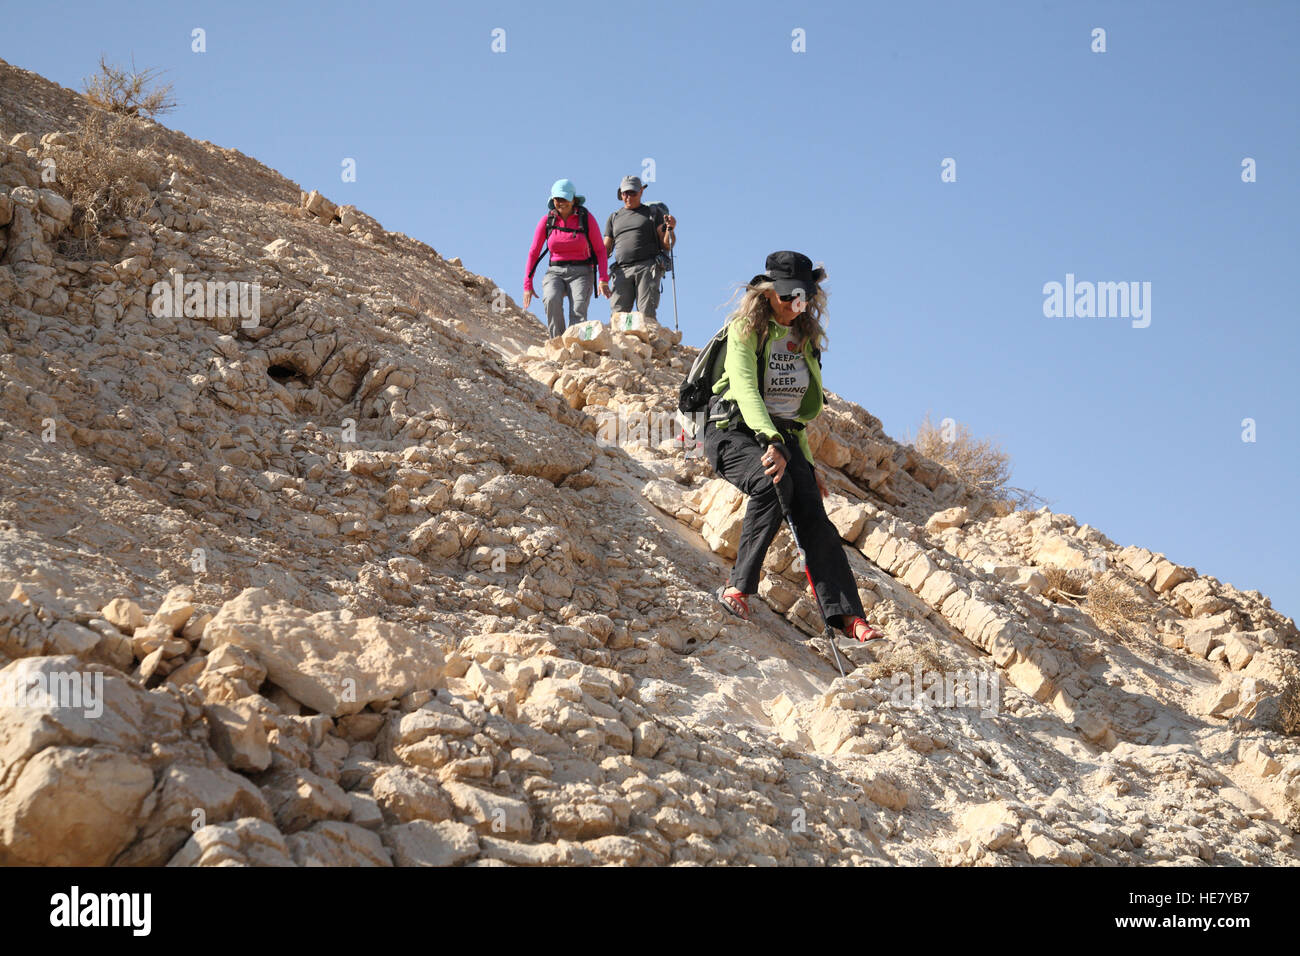 Eine Seniorin Frau Wanderer entstammt sorgfältig einen sehr steilen felsigen Hang Mount Massor mit einem Wanderstock, fallen zu vermeiden Stockfoto